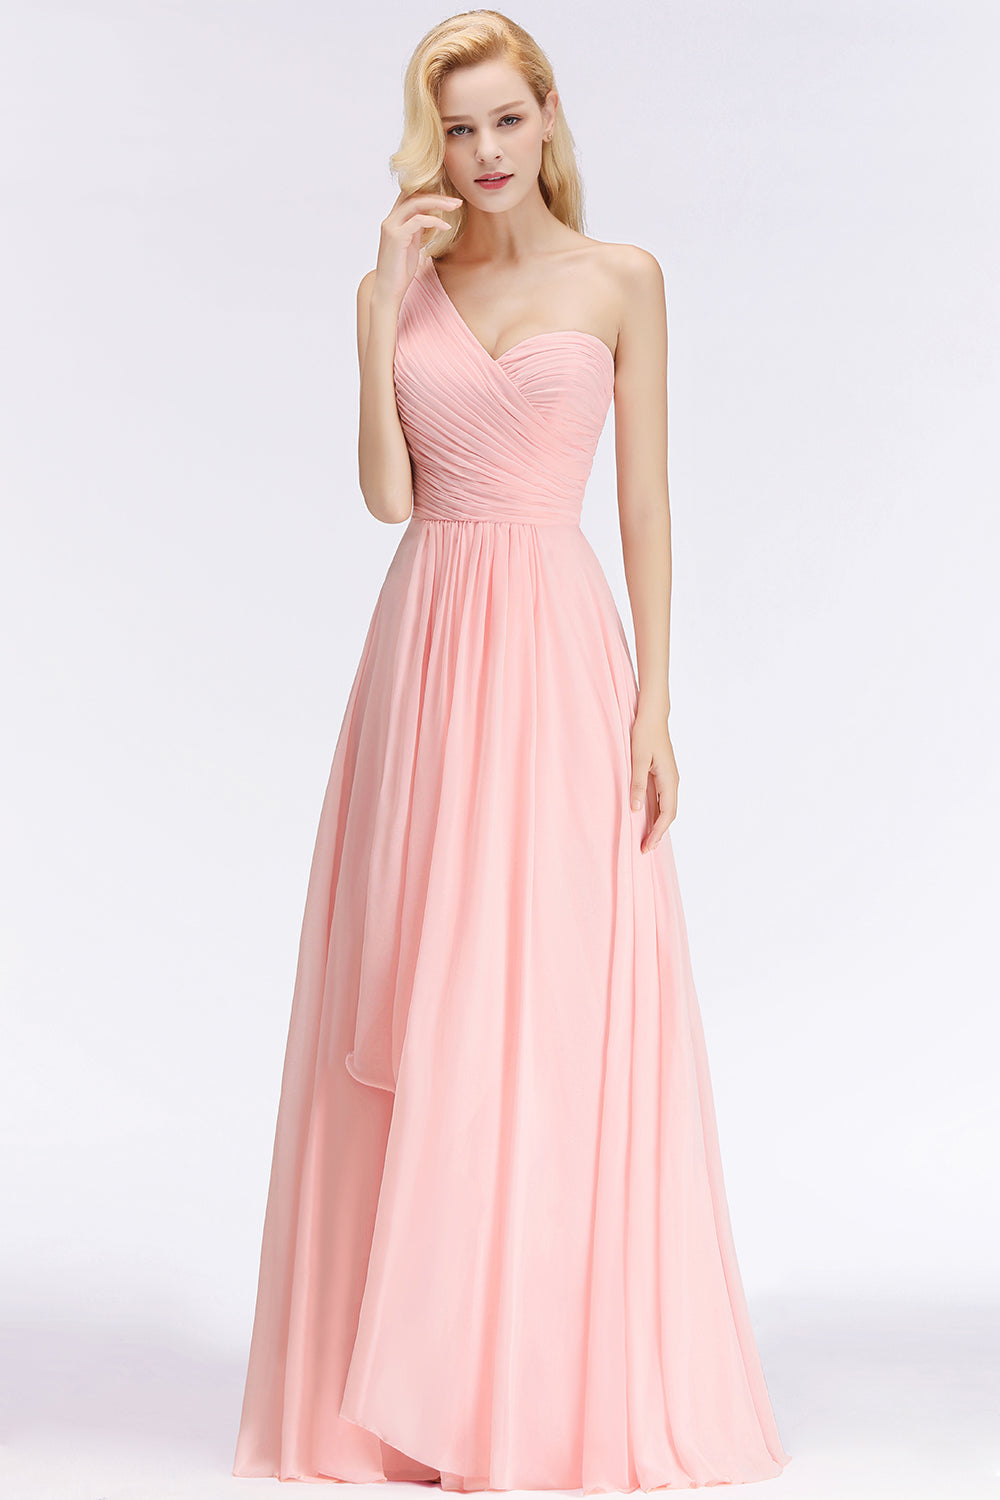 hier können Sie Elegante Rosa Brautjungfernkleider Günstig online kaufen. Chiffon Etuikleider Online für Sie zur Hochzeit mit hocher Qualität und günstigen preis.